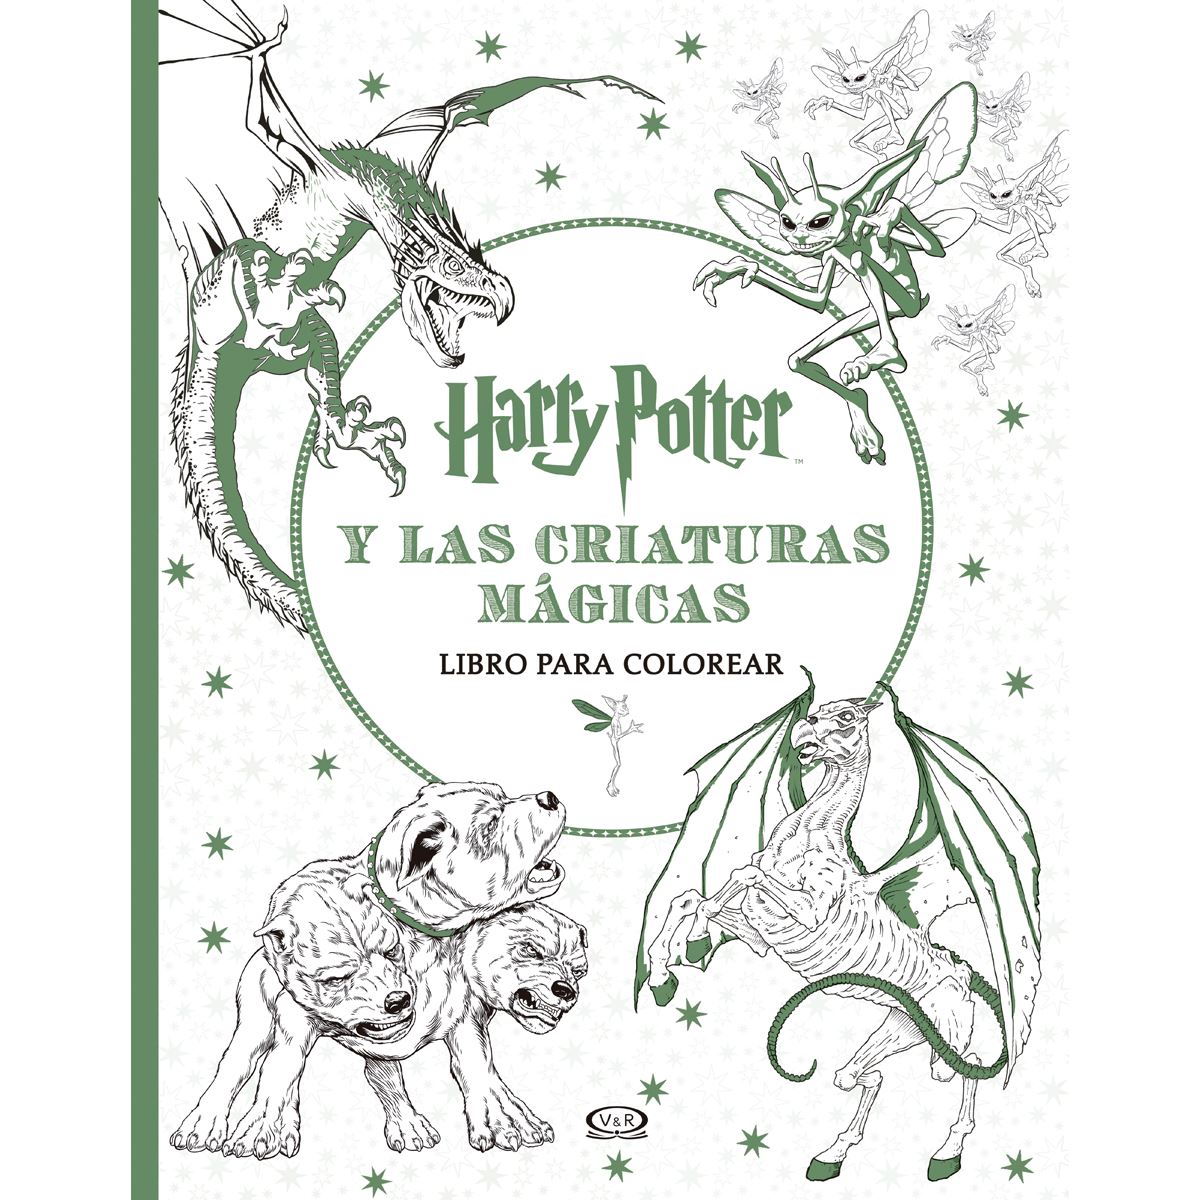 Harry Potter y las criaturas mágicas libro para colorear